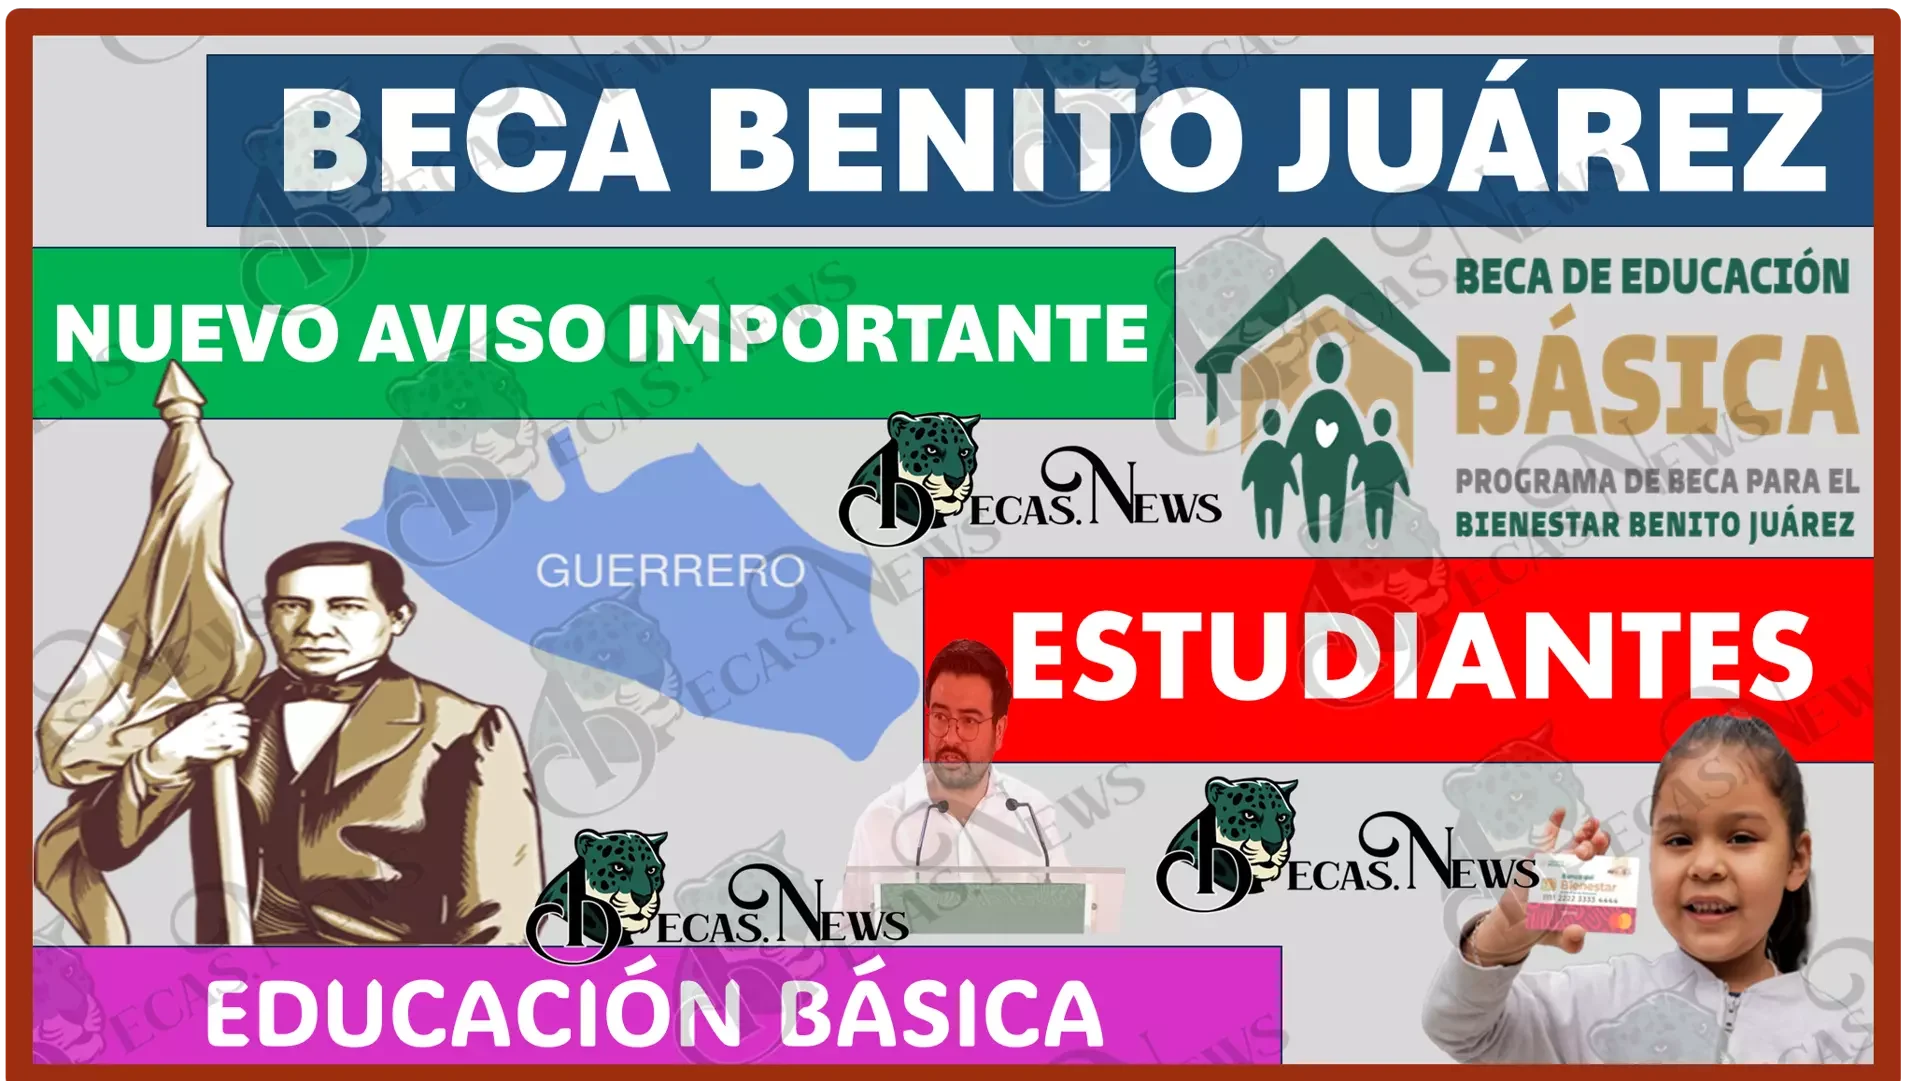 Beca Benito Juárez 2023: Se ha hecho nuevo aviso importante para los estudiantes de una Educación Básica